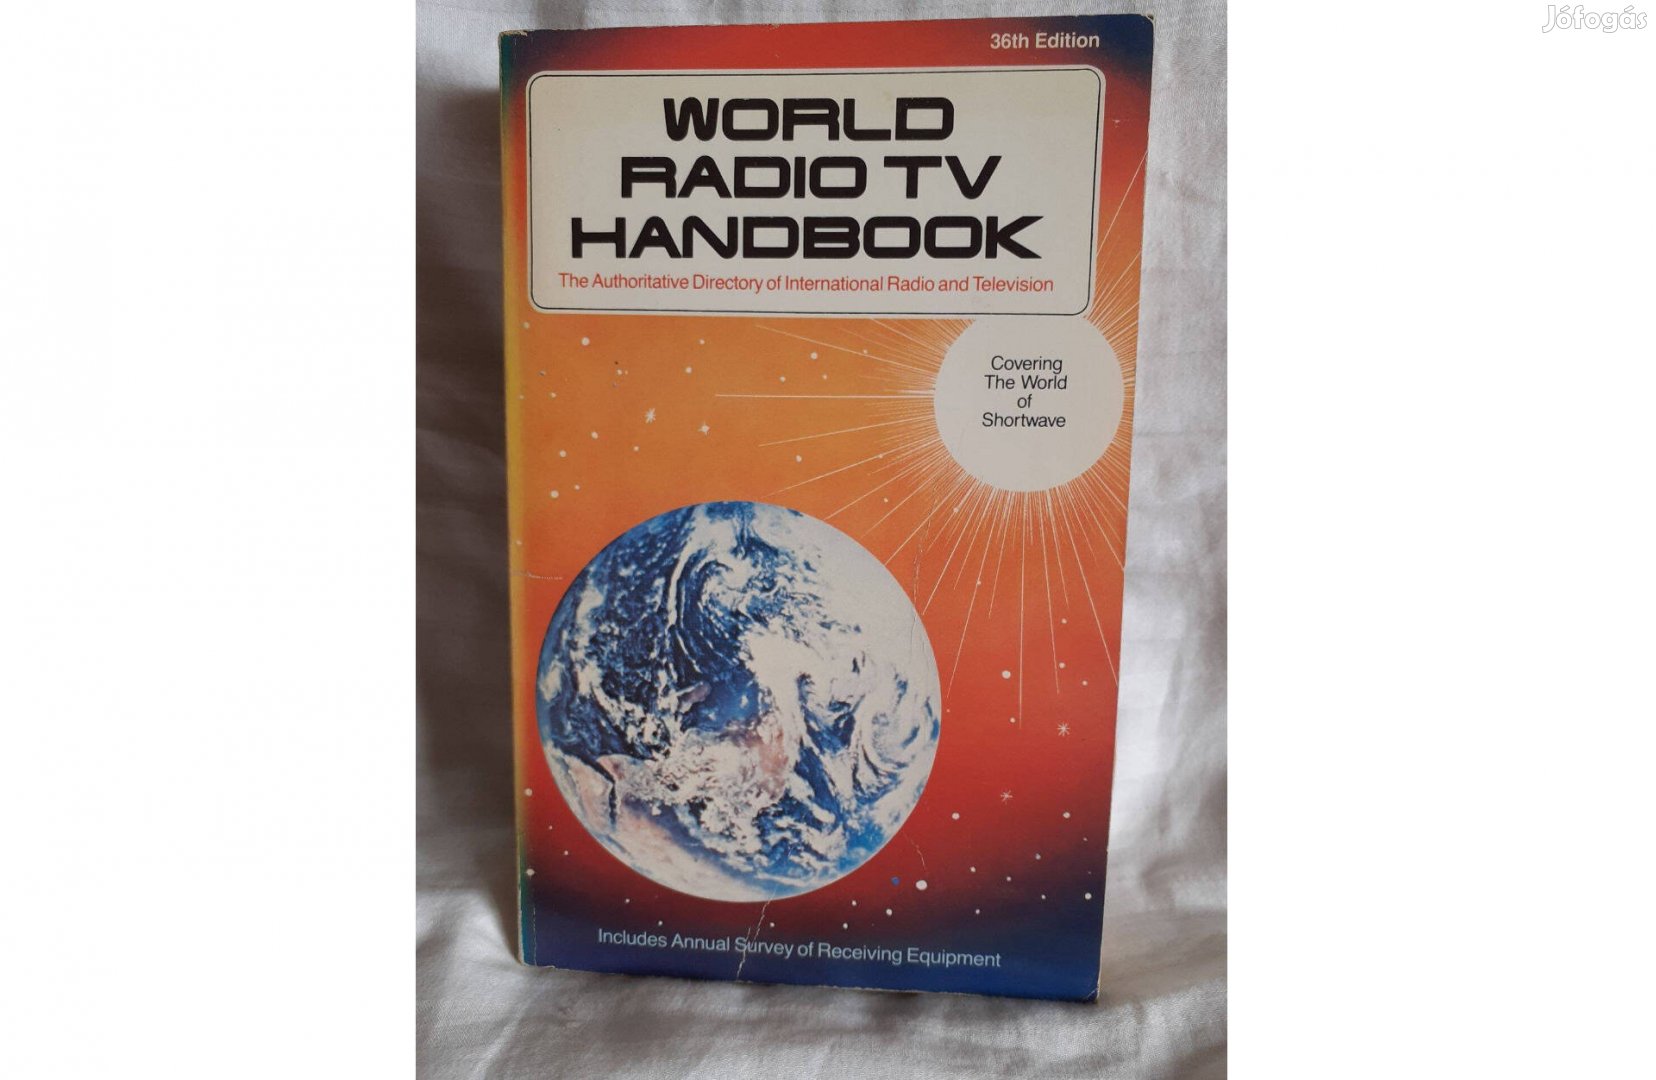 World Radio TV Handbook 1982